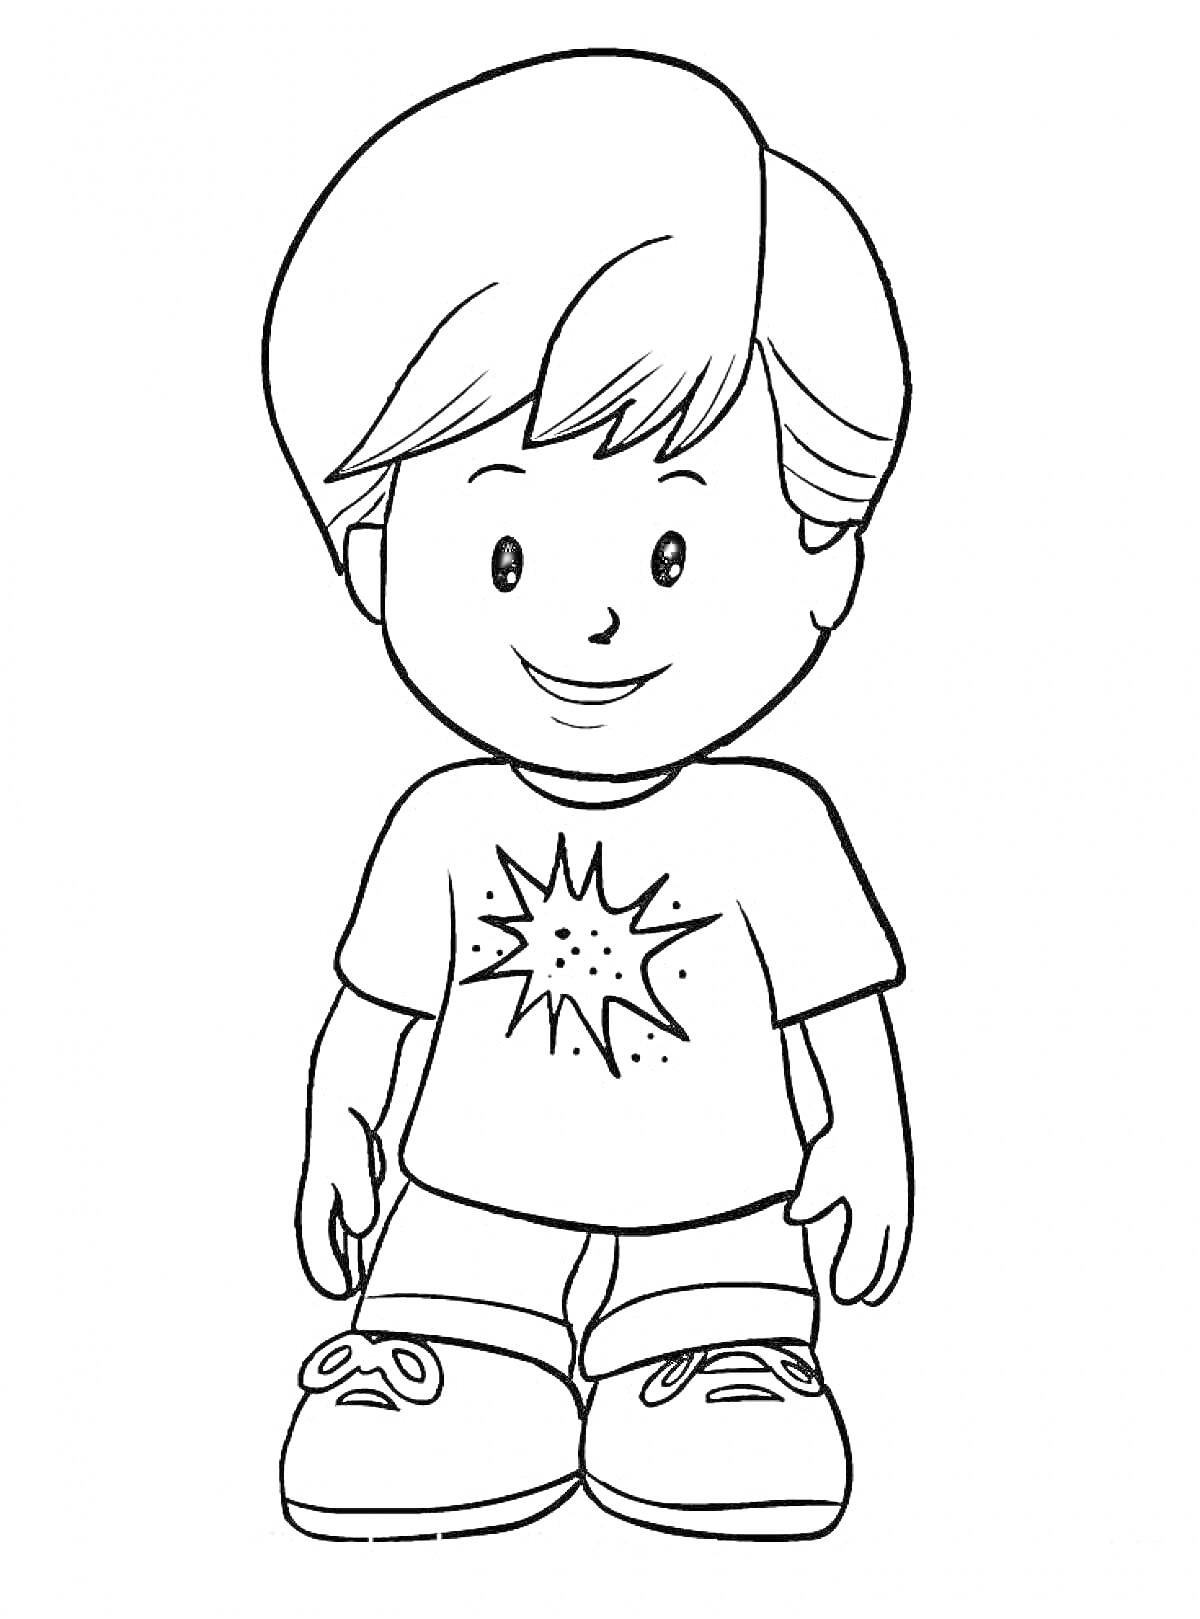 Раскраска Мальчик с короткими волосами в футболке с рисунком звезды, в шортах и кроссовках